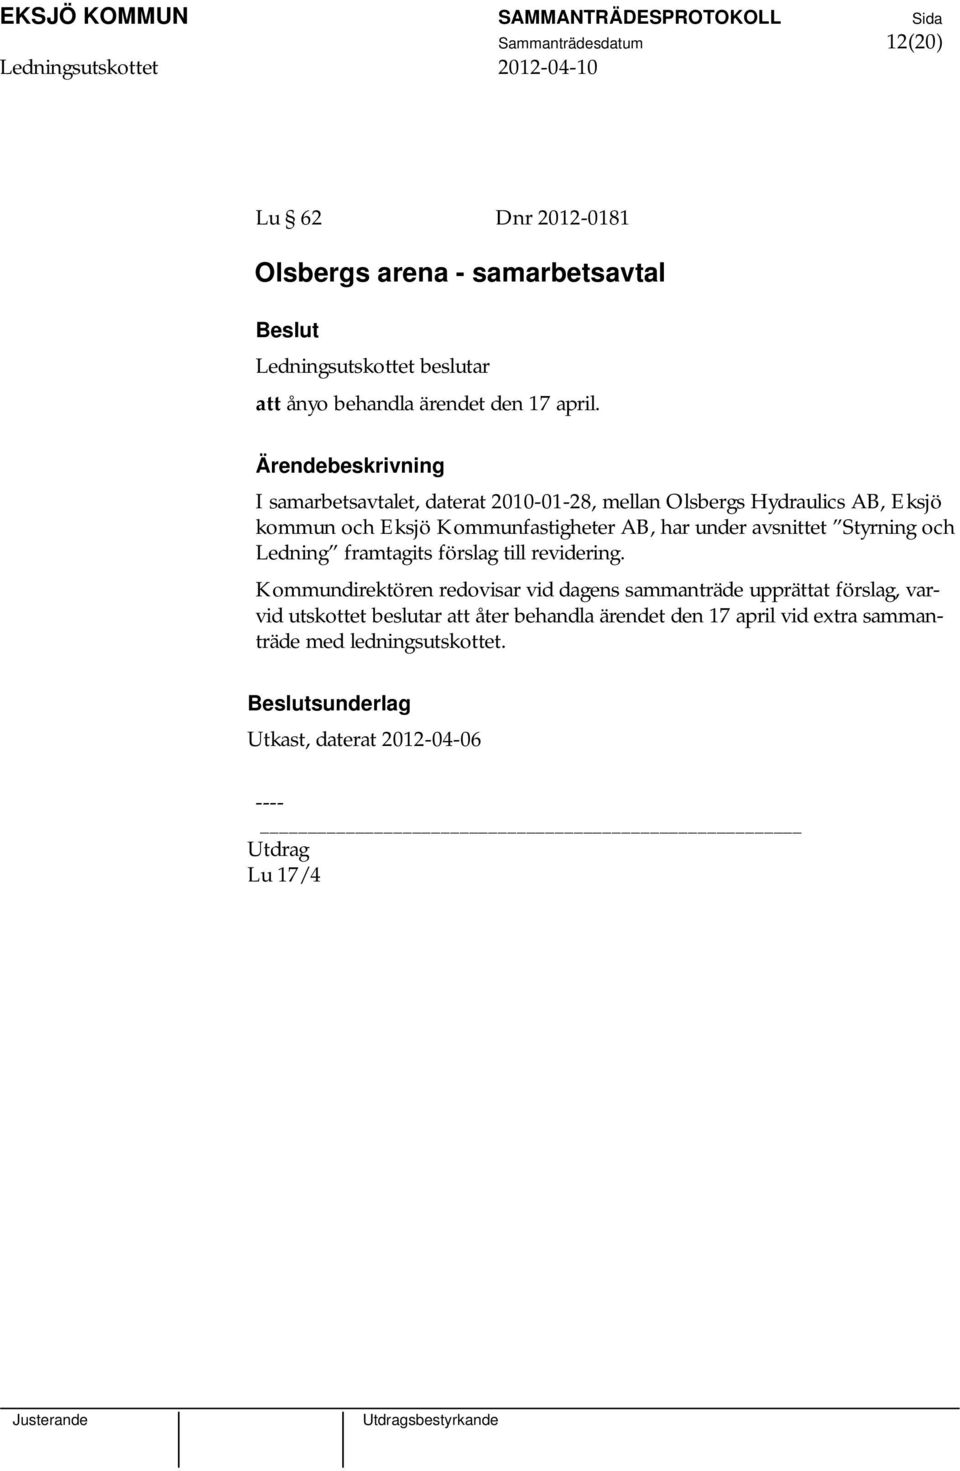 I samarbetsavtalet, daterat 2010-01-28, mellan Olsbergs Hydraulics AB, Eksjö kommun och Eksjö Kommunfastigheter AB, har under avsnittet